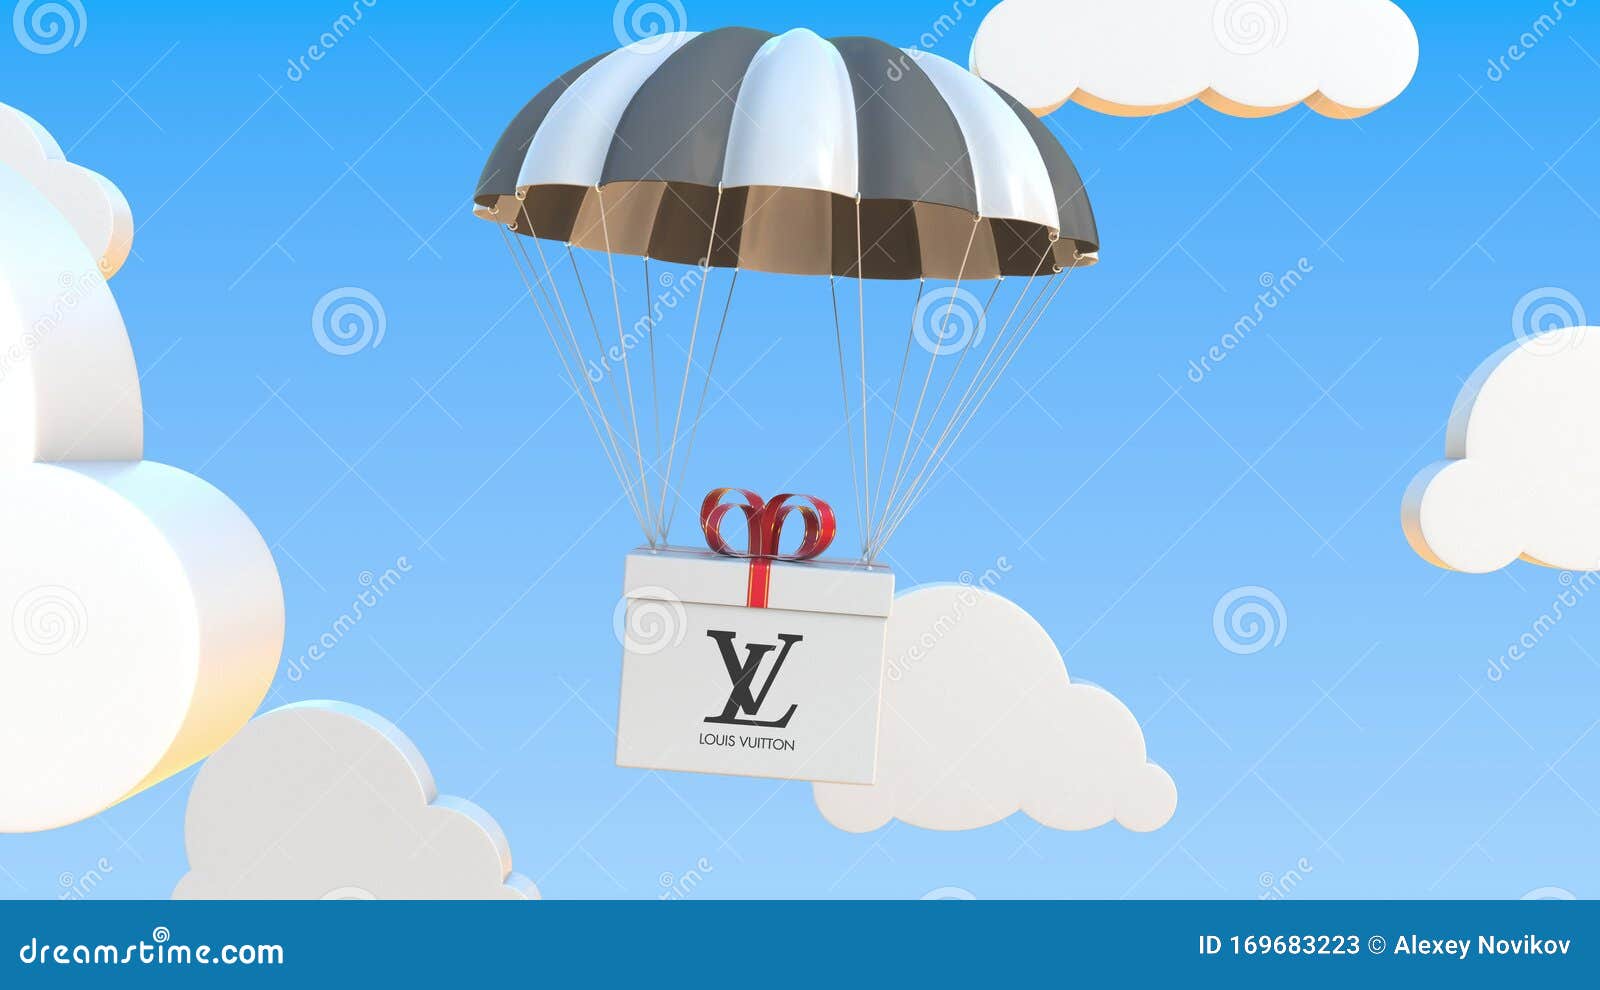 Louis Vuitton Logo Editorial Illustrative on White Background